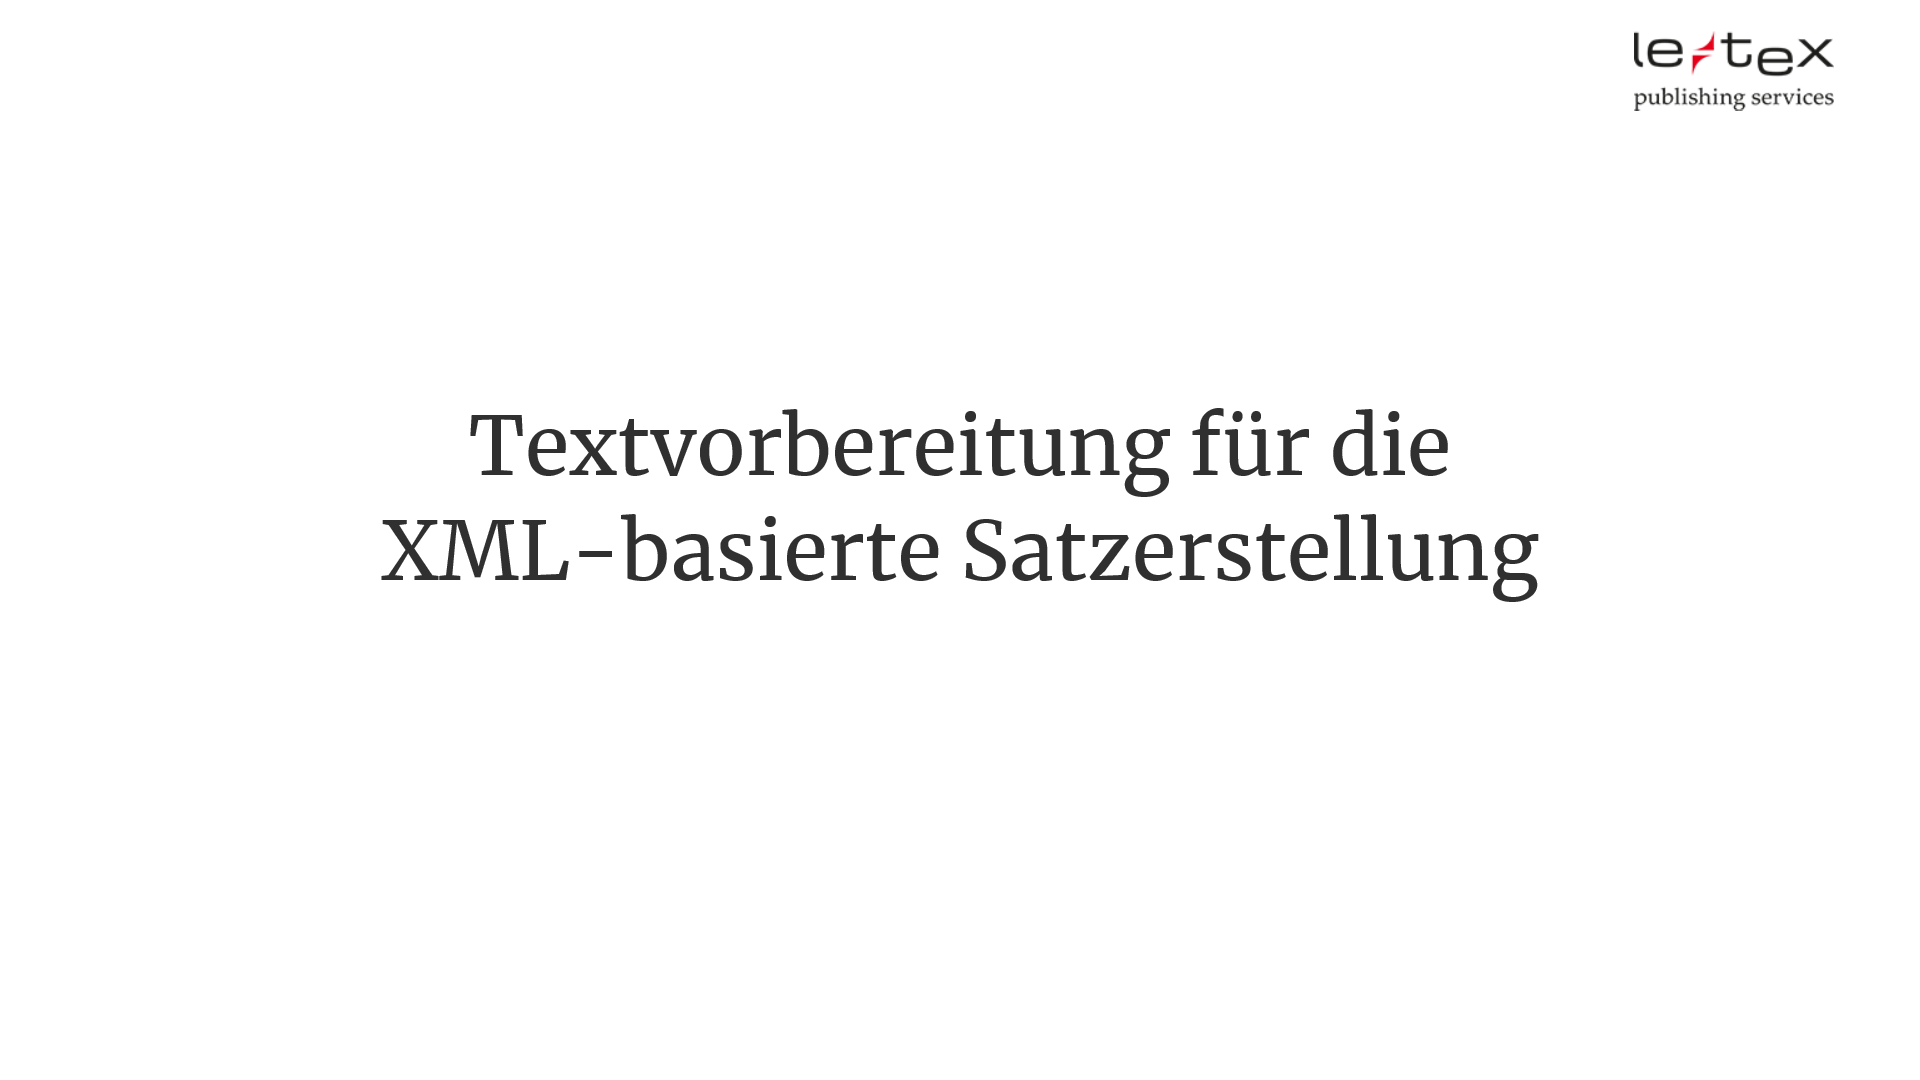 Das Bild zeigt einen Slide auf dem der Titel Textvorbereitung für die XML-basierte Satzerstellung